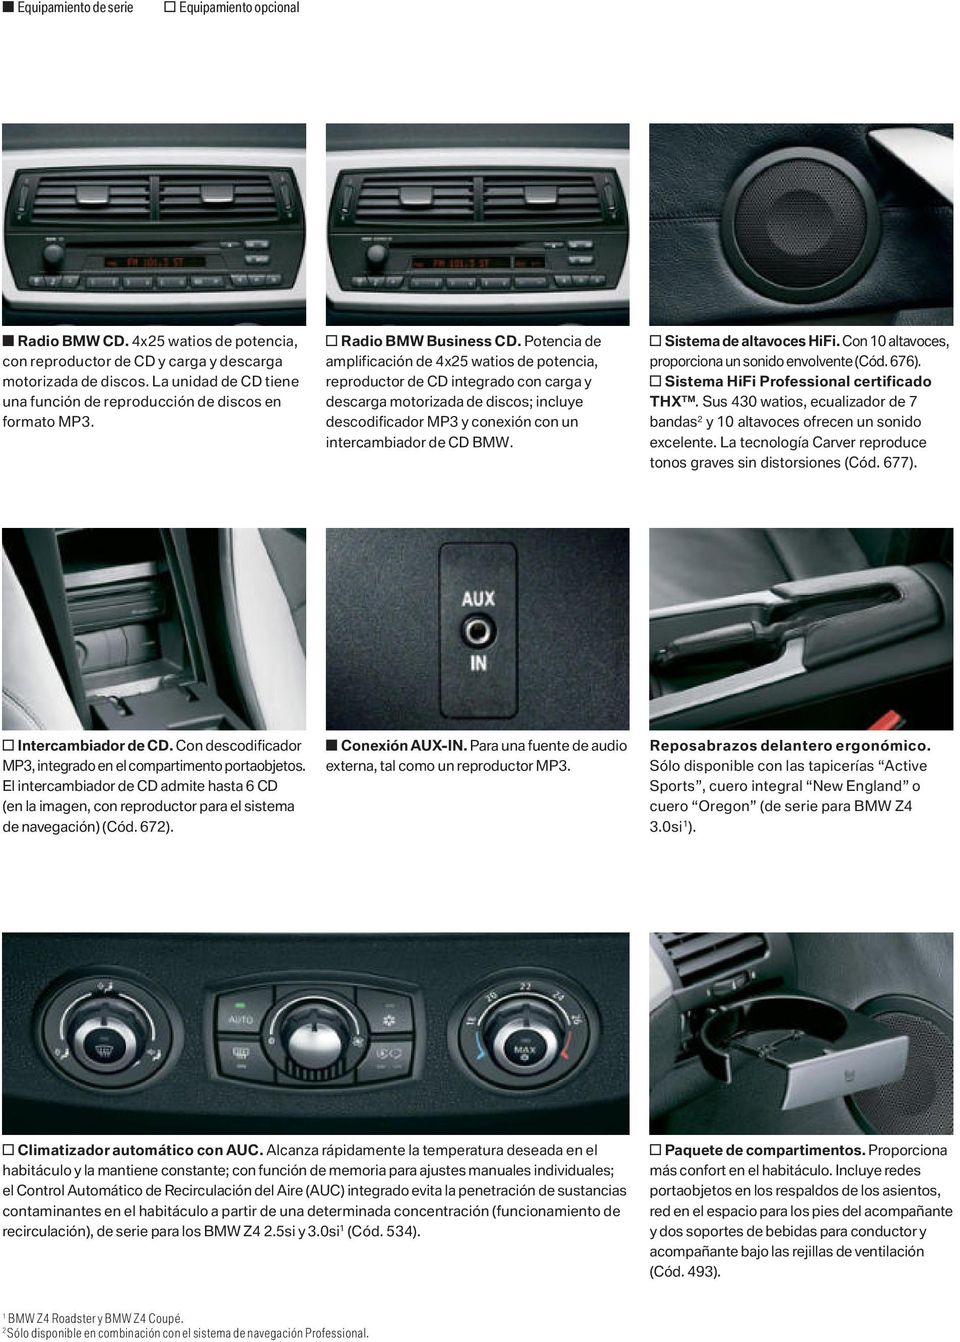 Potencia de amplificación de 4x25 watios de potencia, reproductor de CD integrado con carga y descarga motorizada de discos; incluye descodificador MP3 y conexión con un intercambiador de CD BMW.